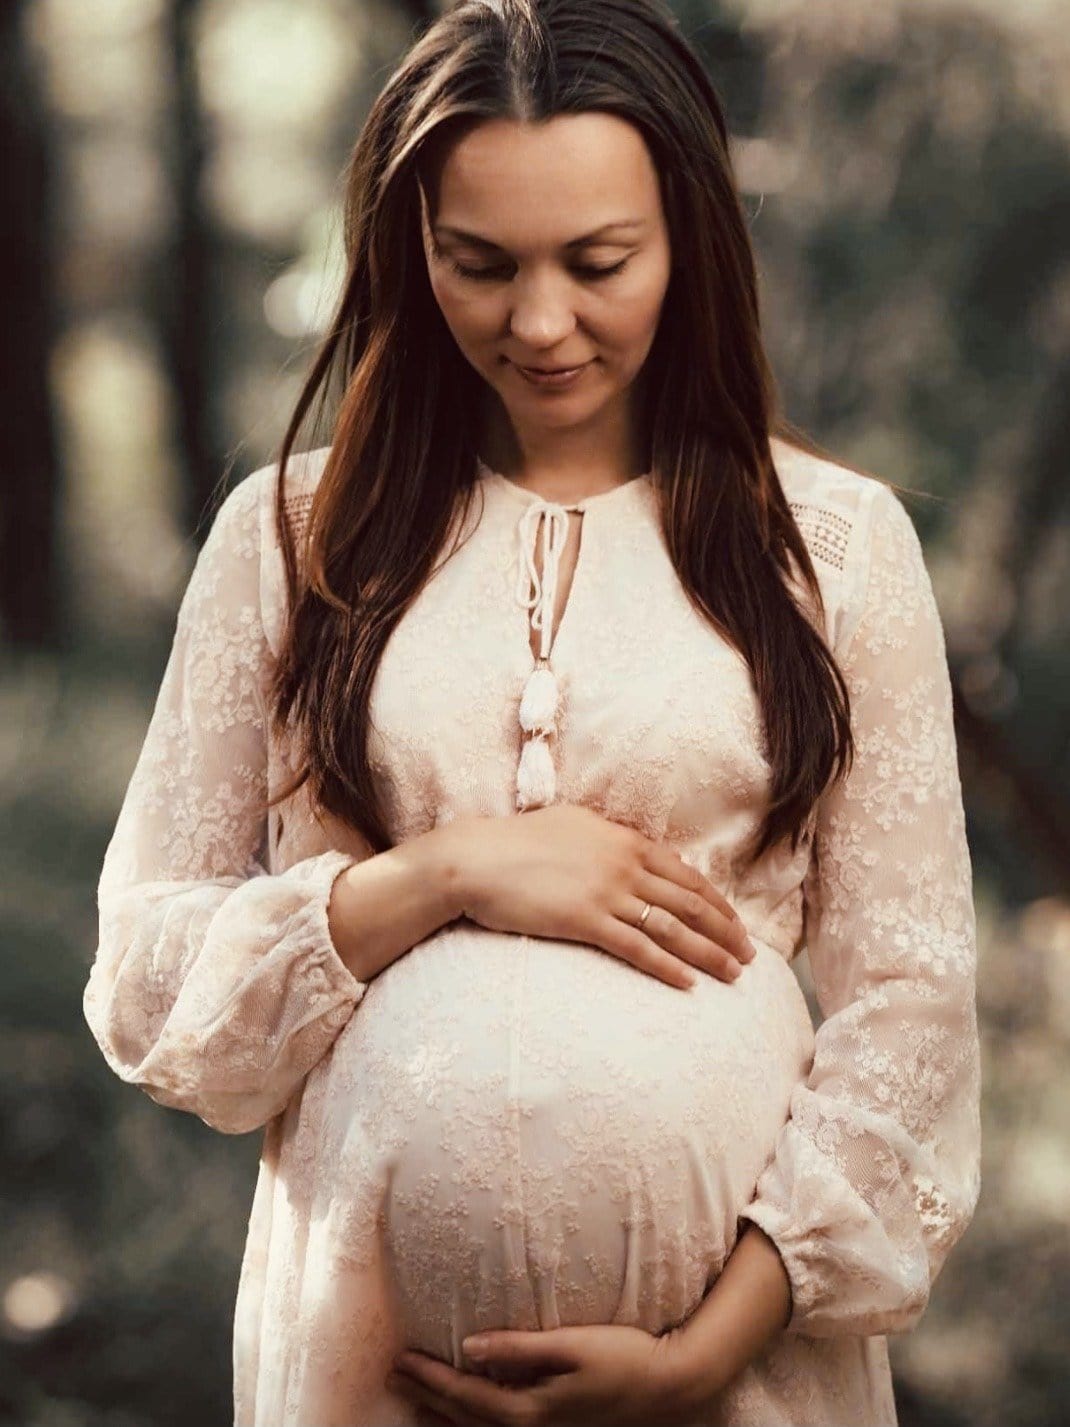 Pregnant lady wearing blush lace maternity dress